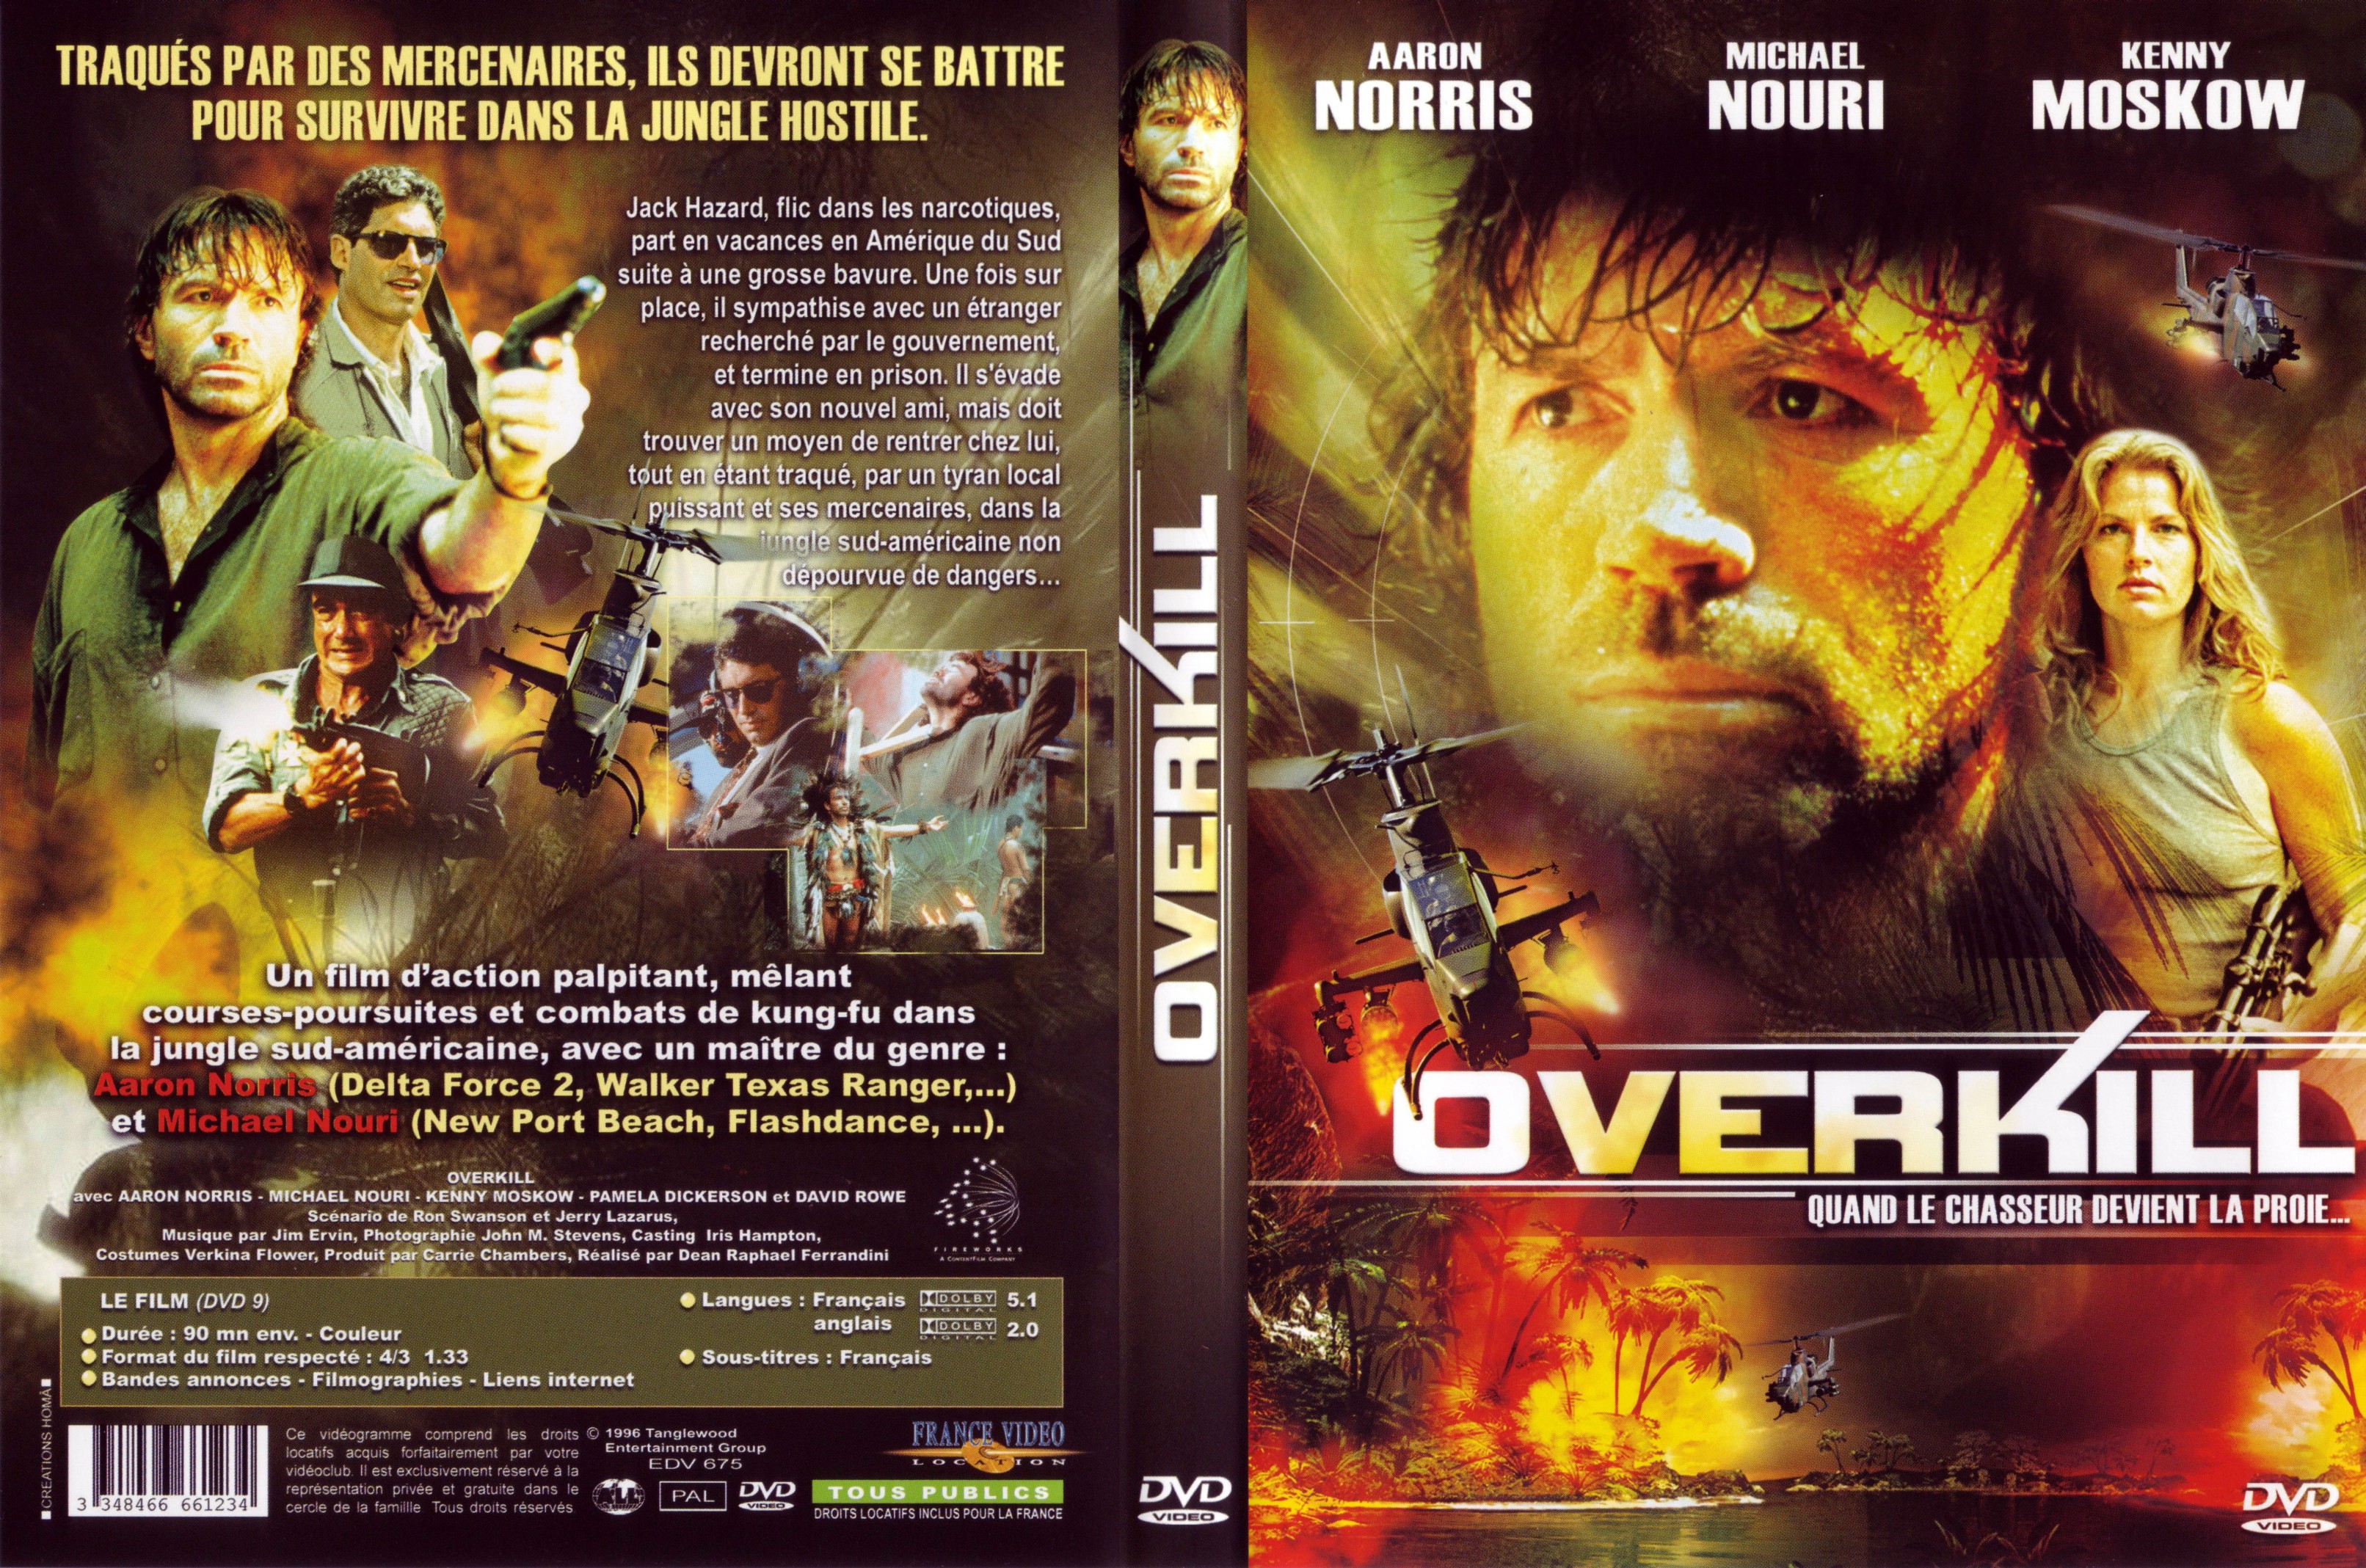 Jaquette DVD Overkill